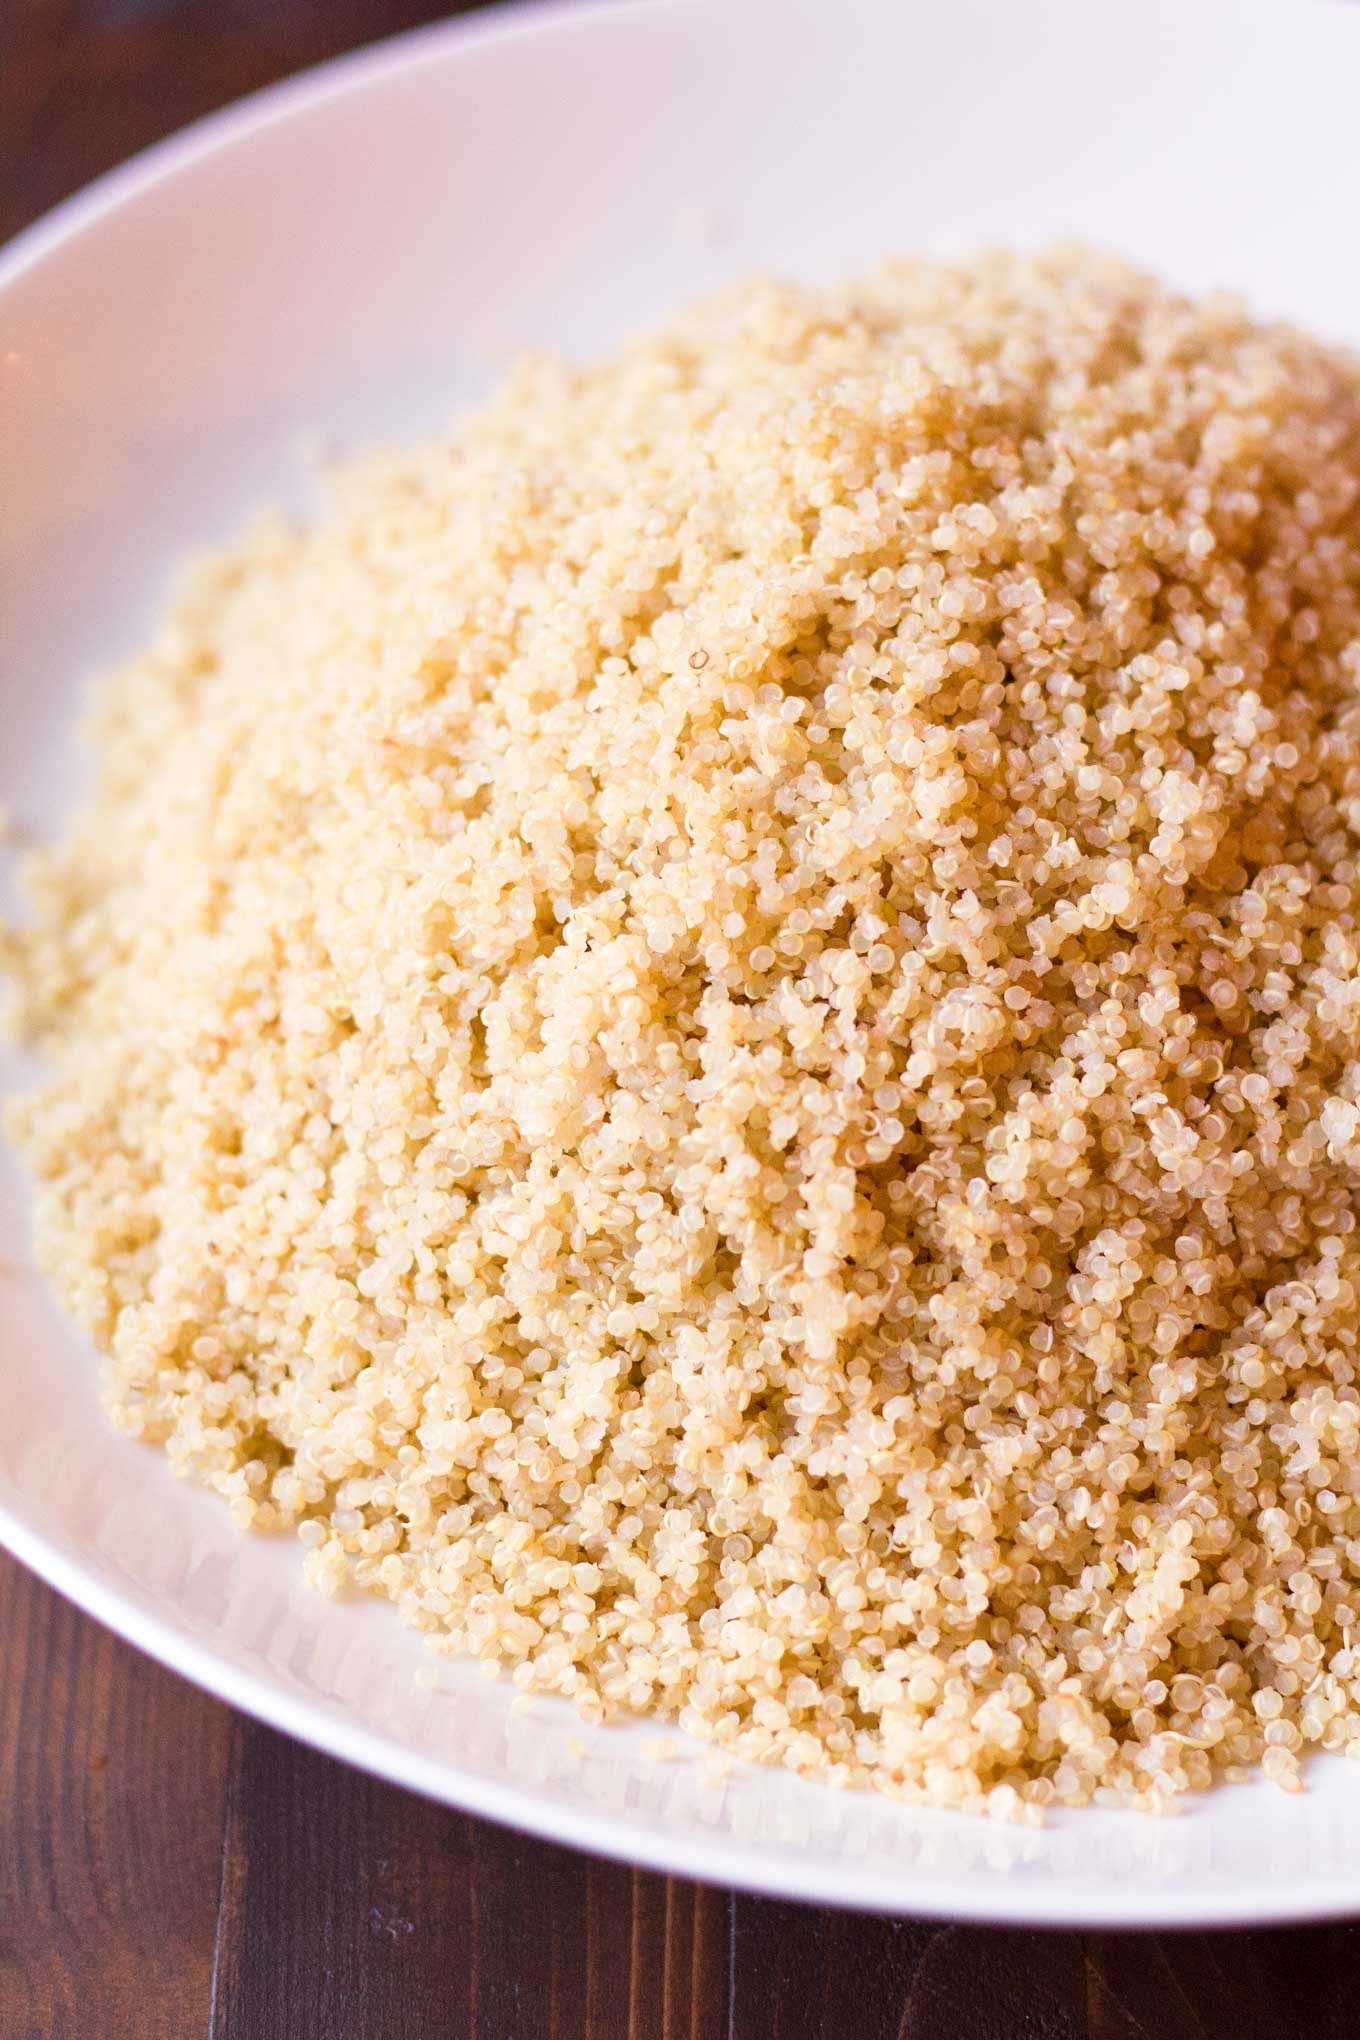 https://passtheplants.com/wp-content/uploads/2016/10/Cook-Quinoa-Instant-Pot-Pressure-Cooker-6.jpg